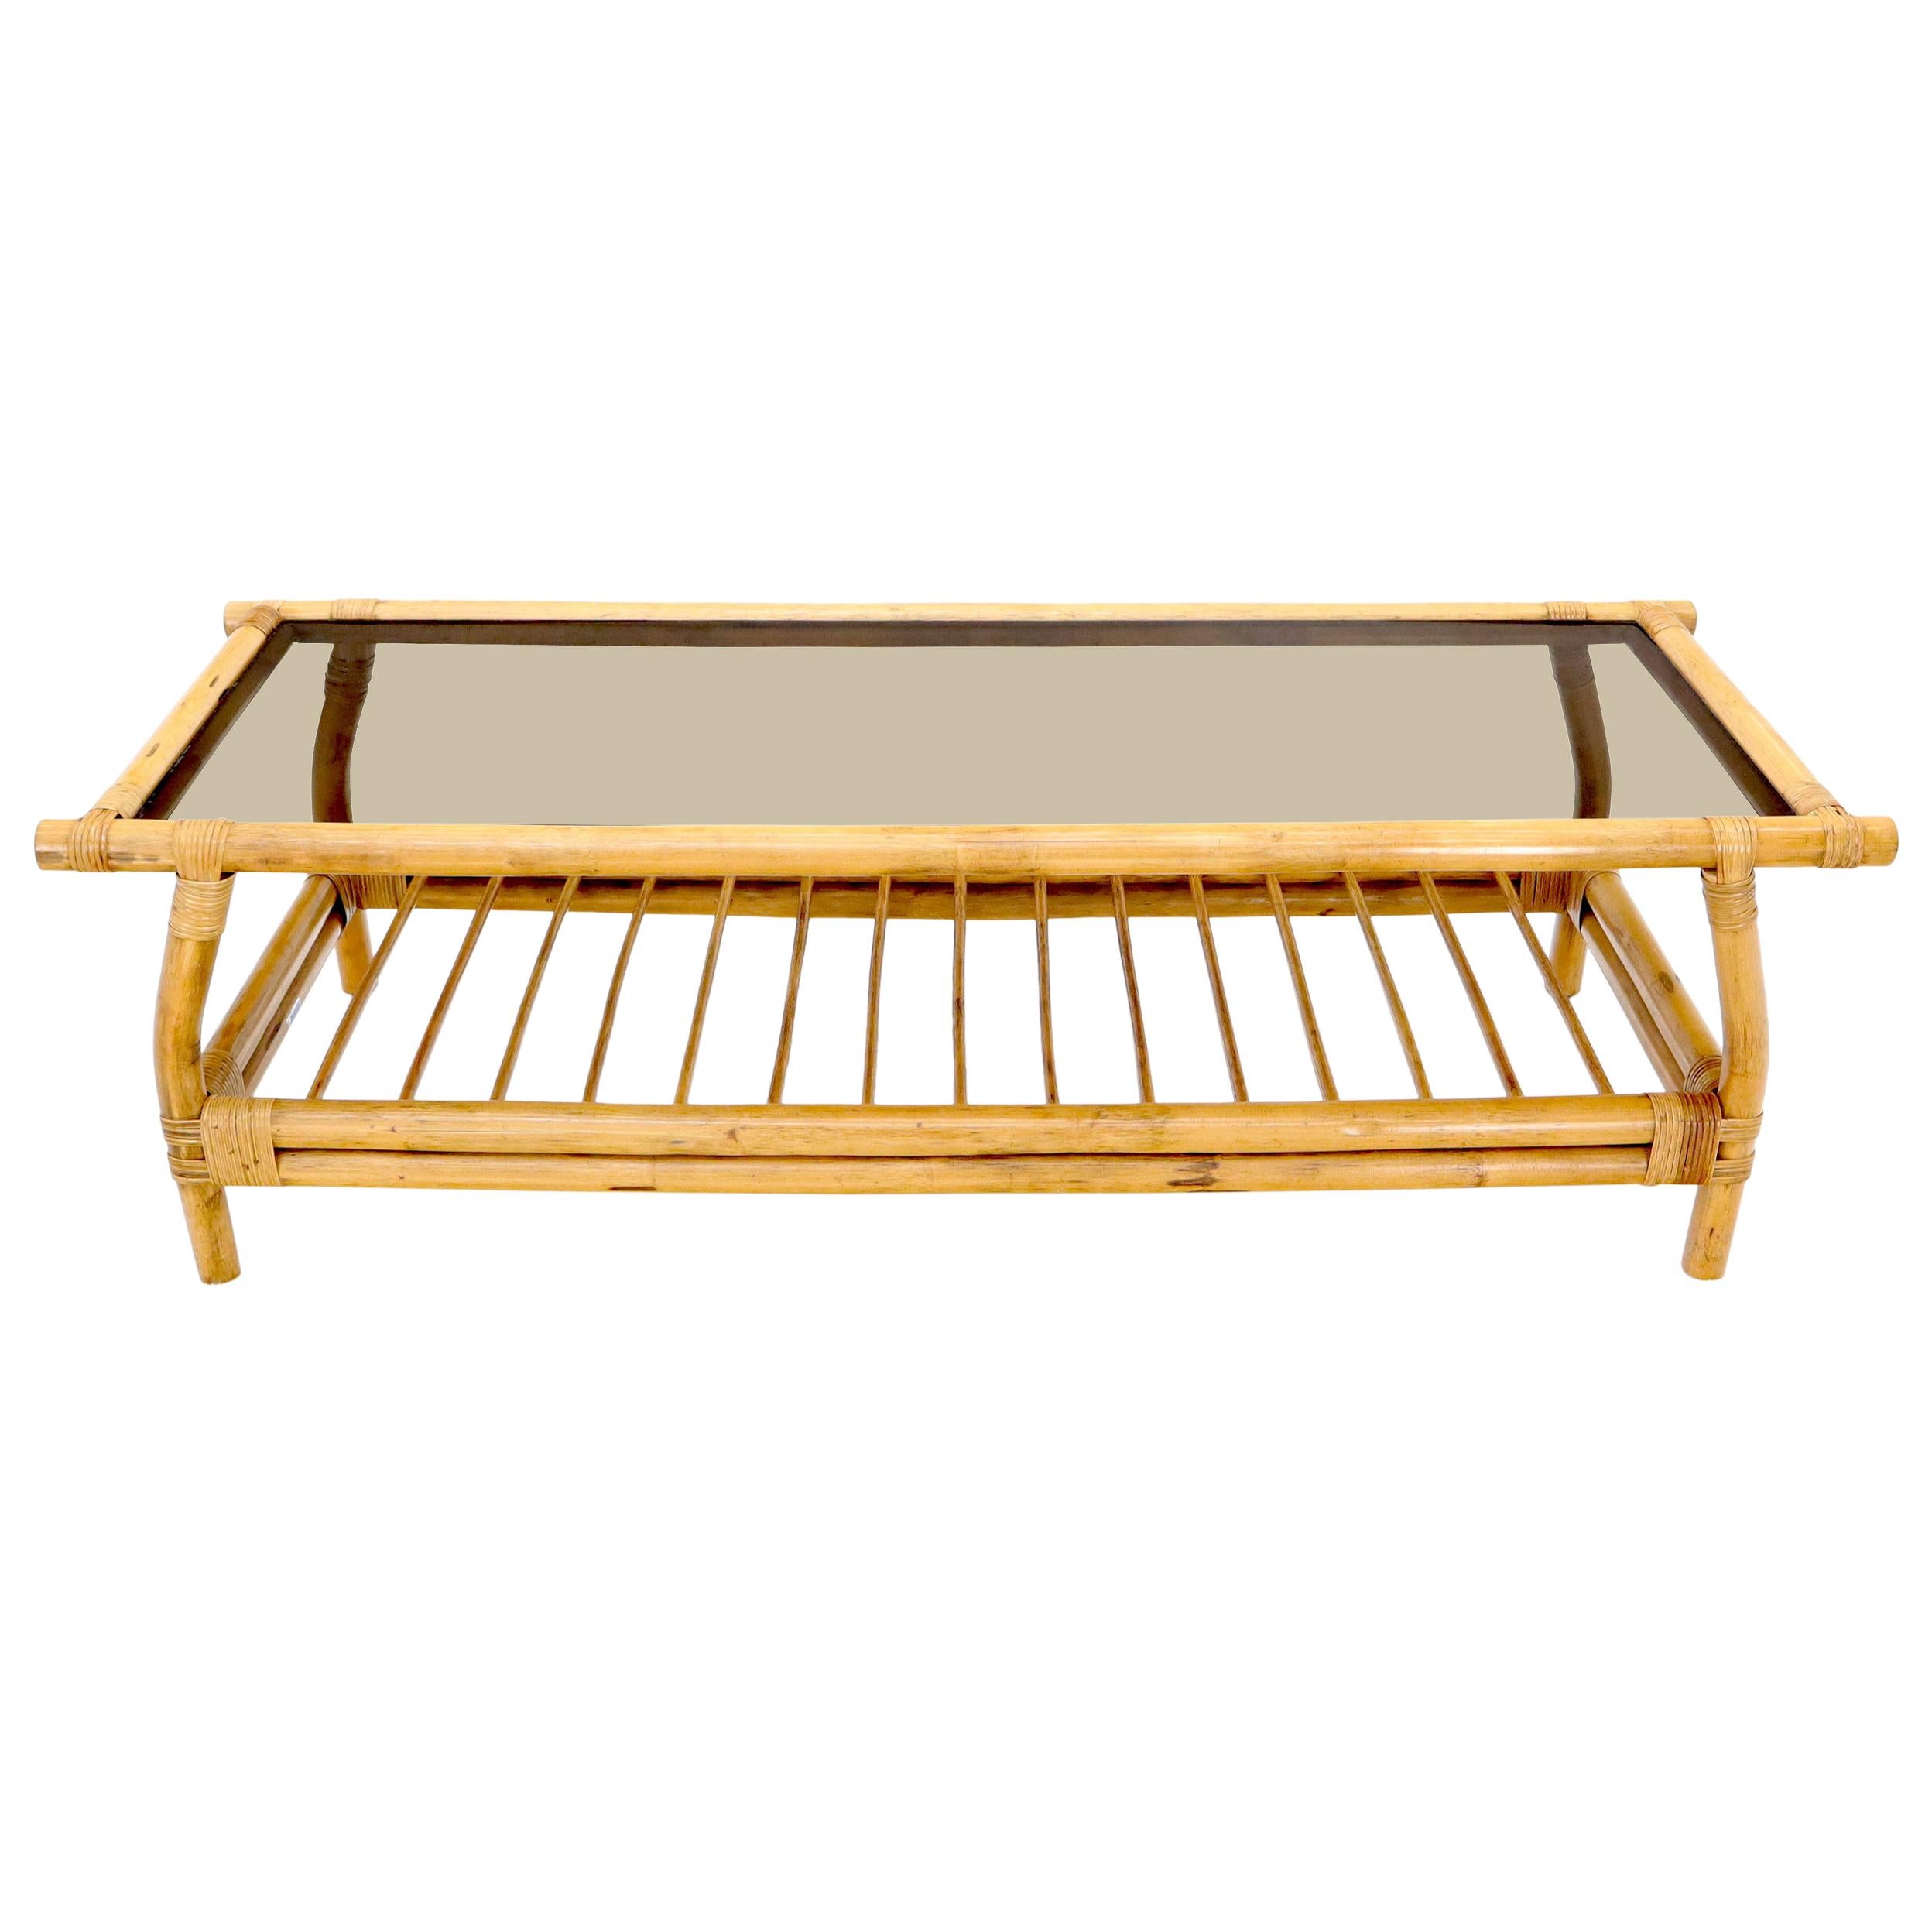 Table basse rectangulaire en bambou et rotin fumé avec étagère inférieure en forme de chevalet